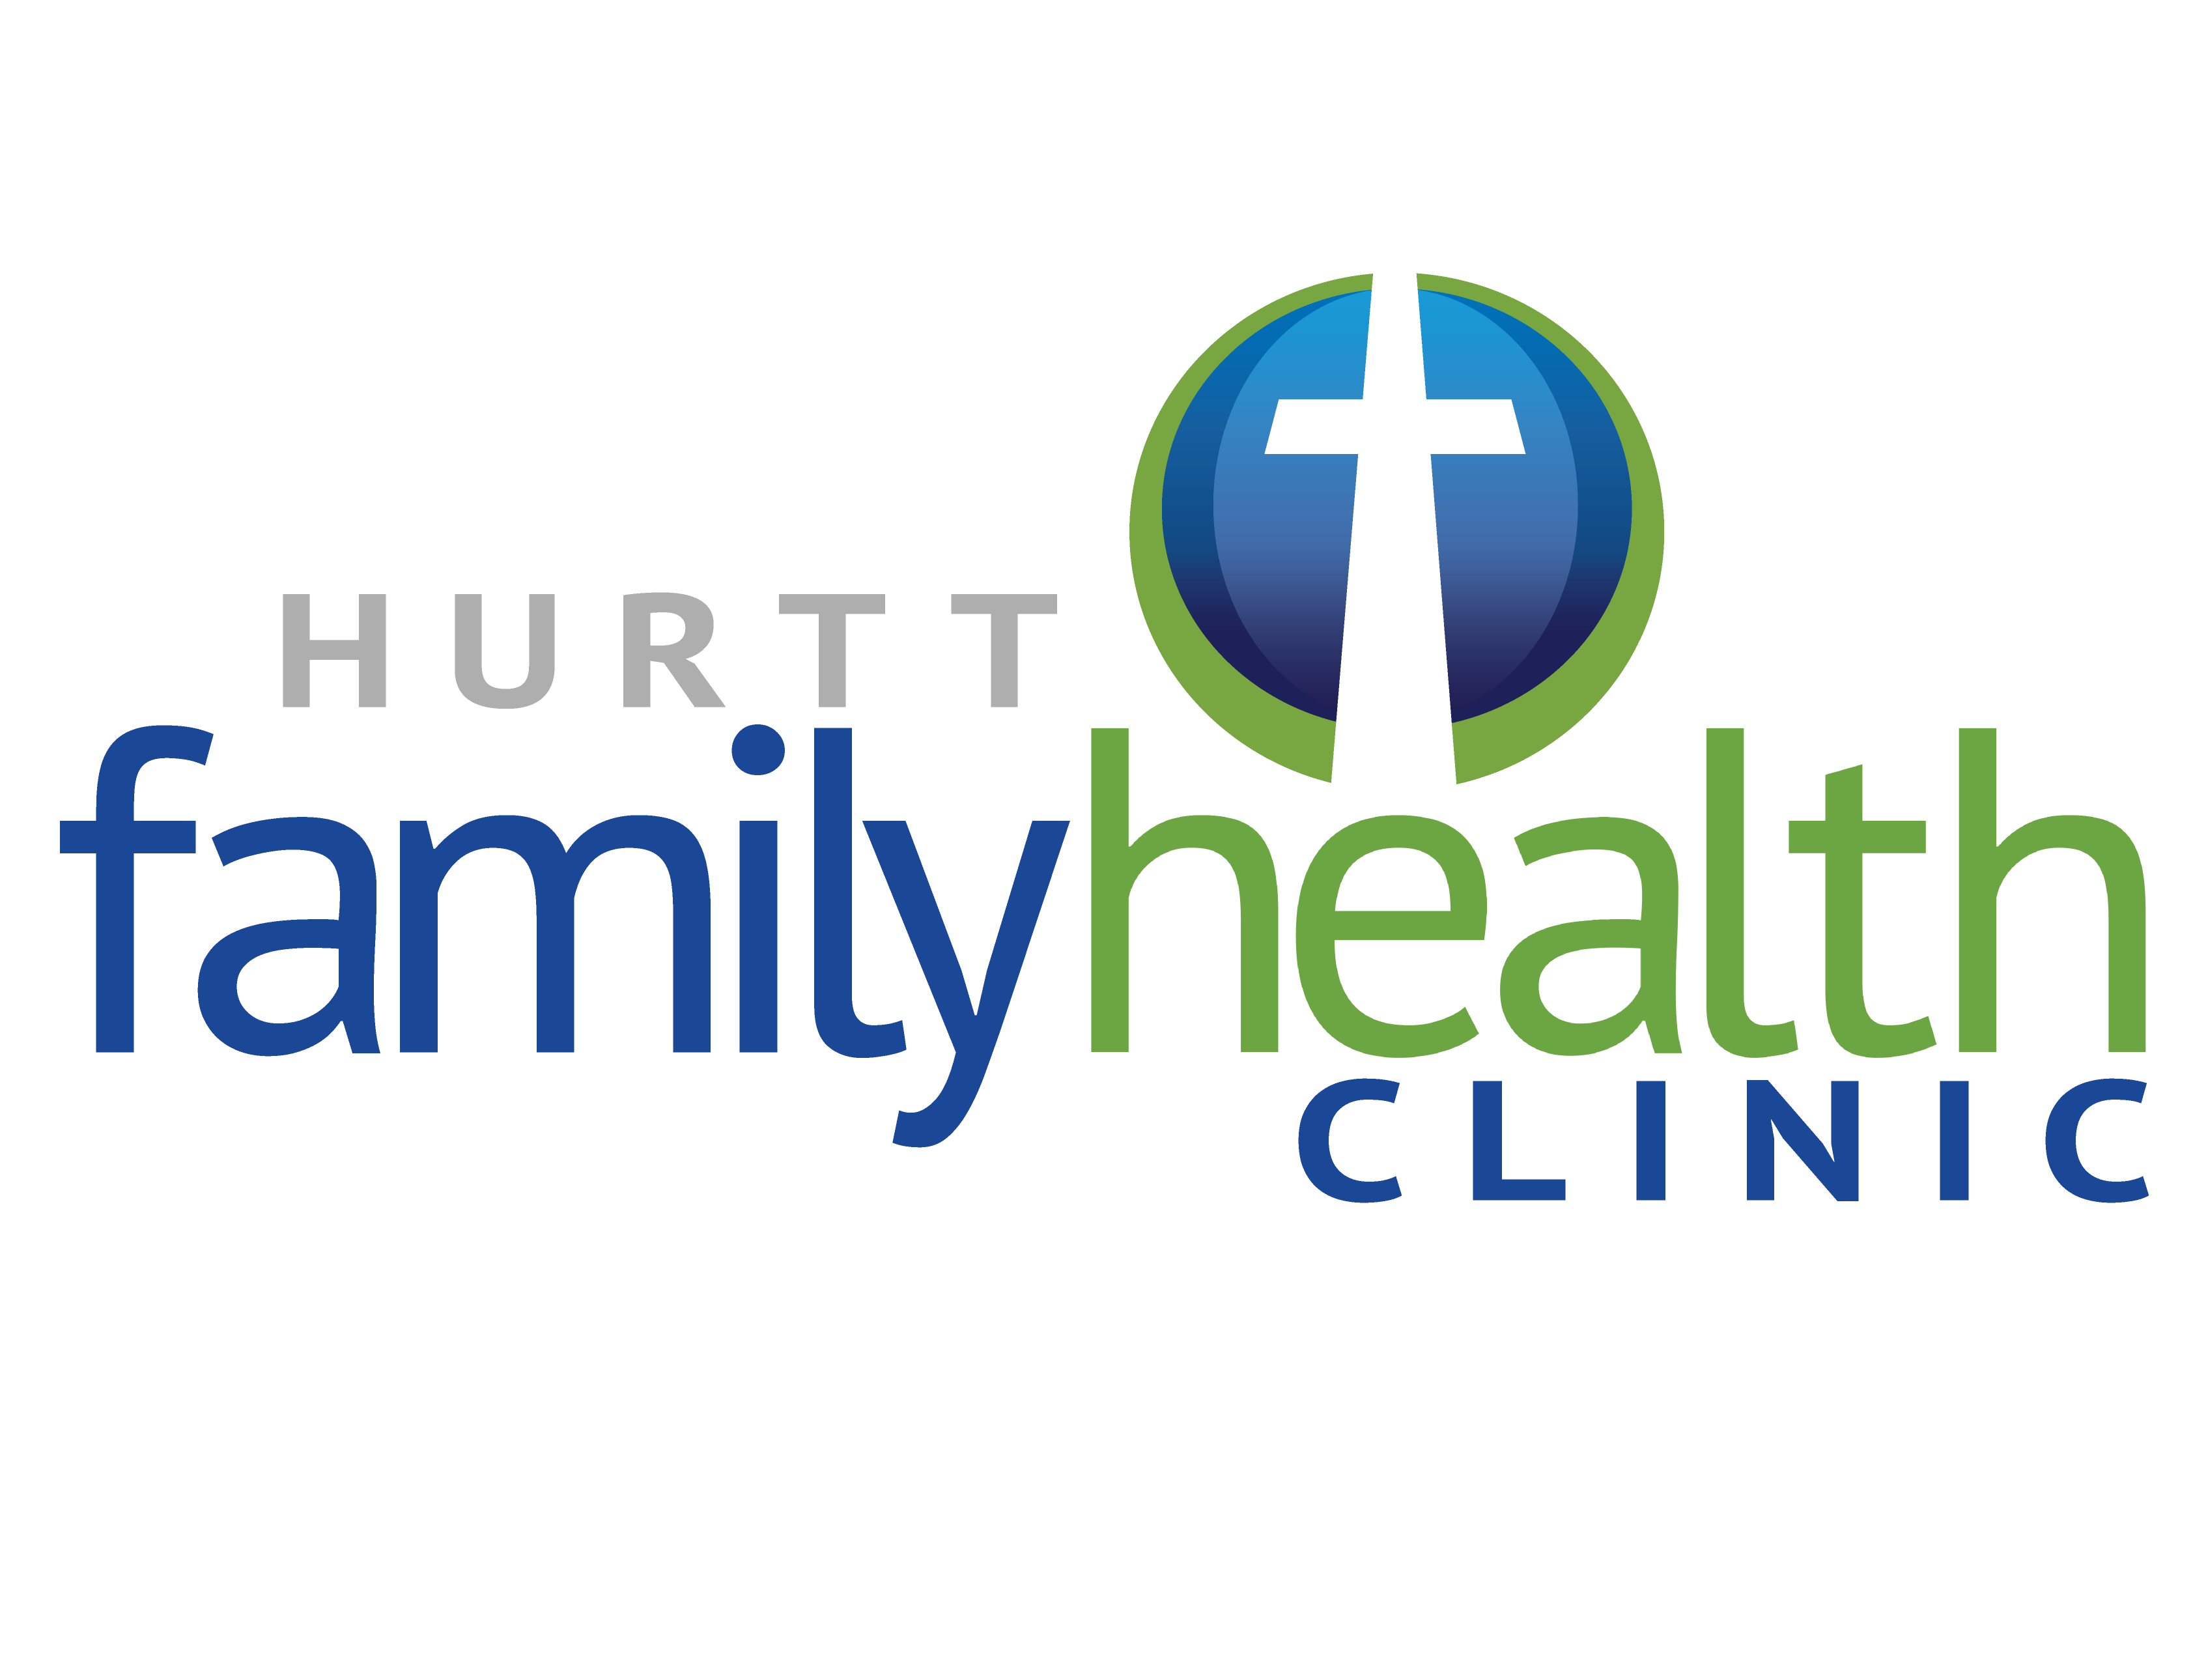 Hurtt Family Health Clinic Company Logo